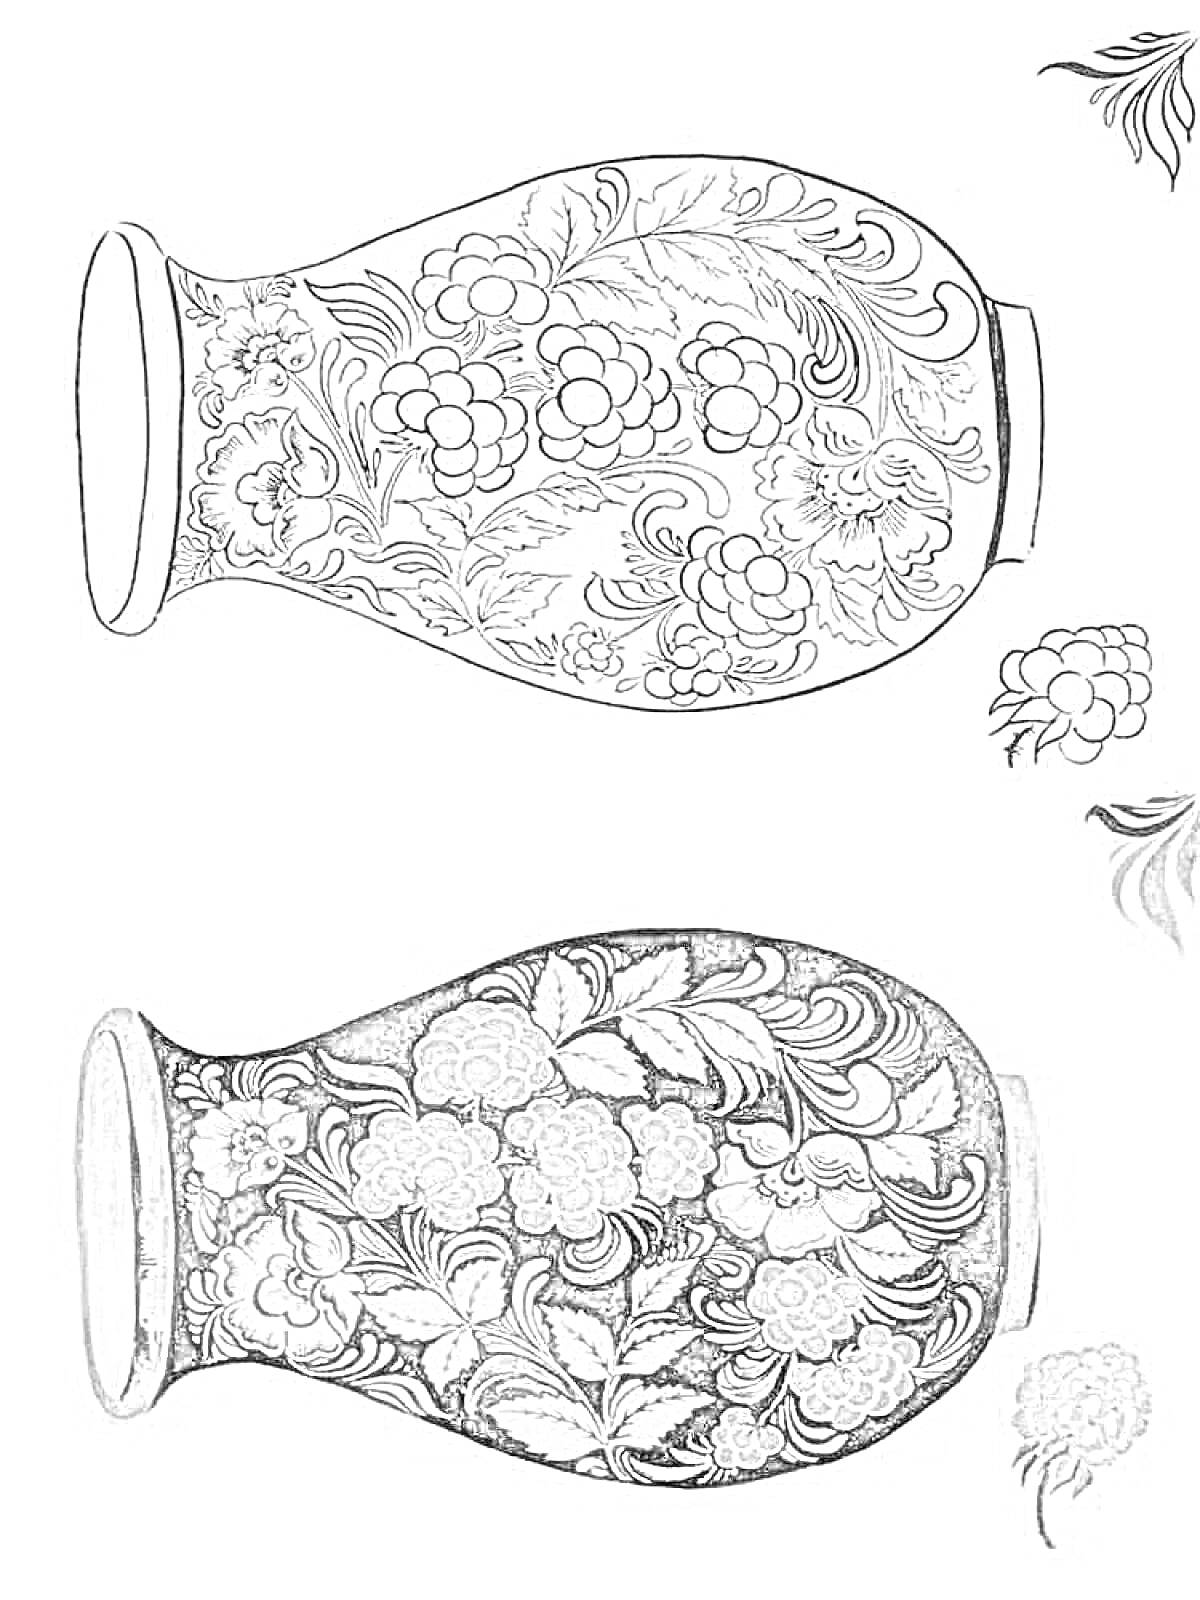 Раскраска Ваза с хохломской росписью, включает цветочный орнамент, листья и ягодные узоры